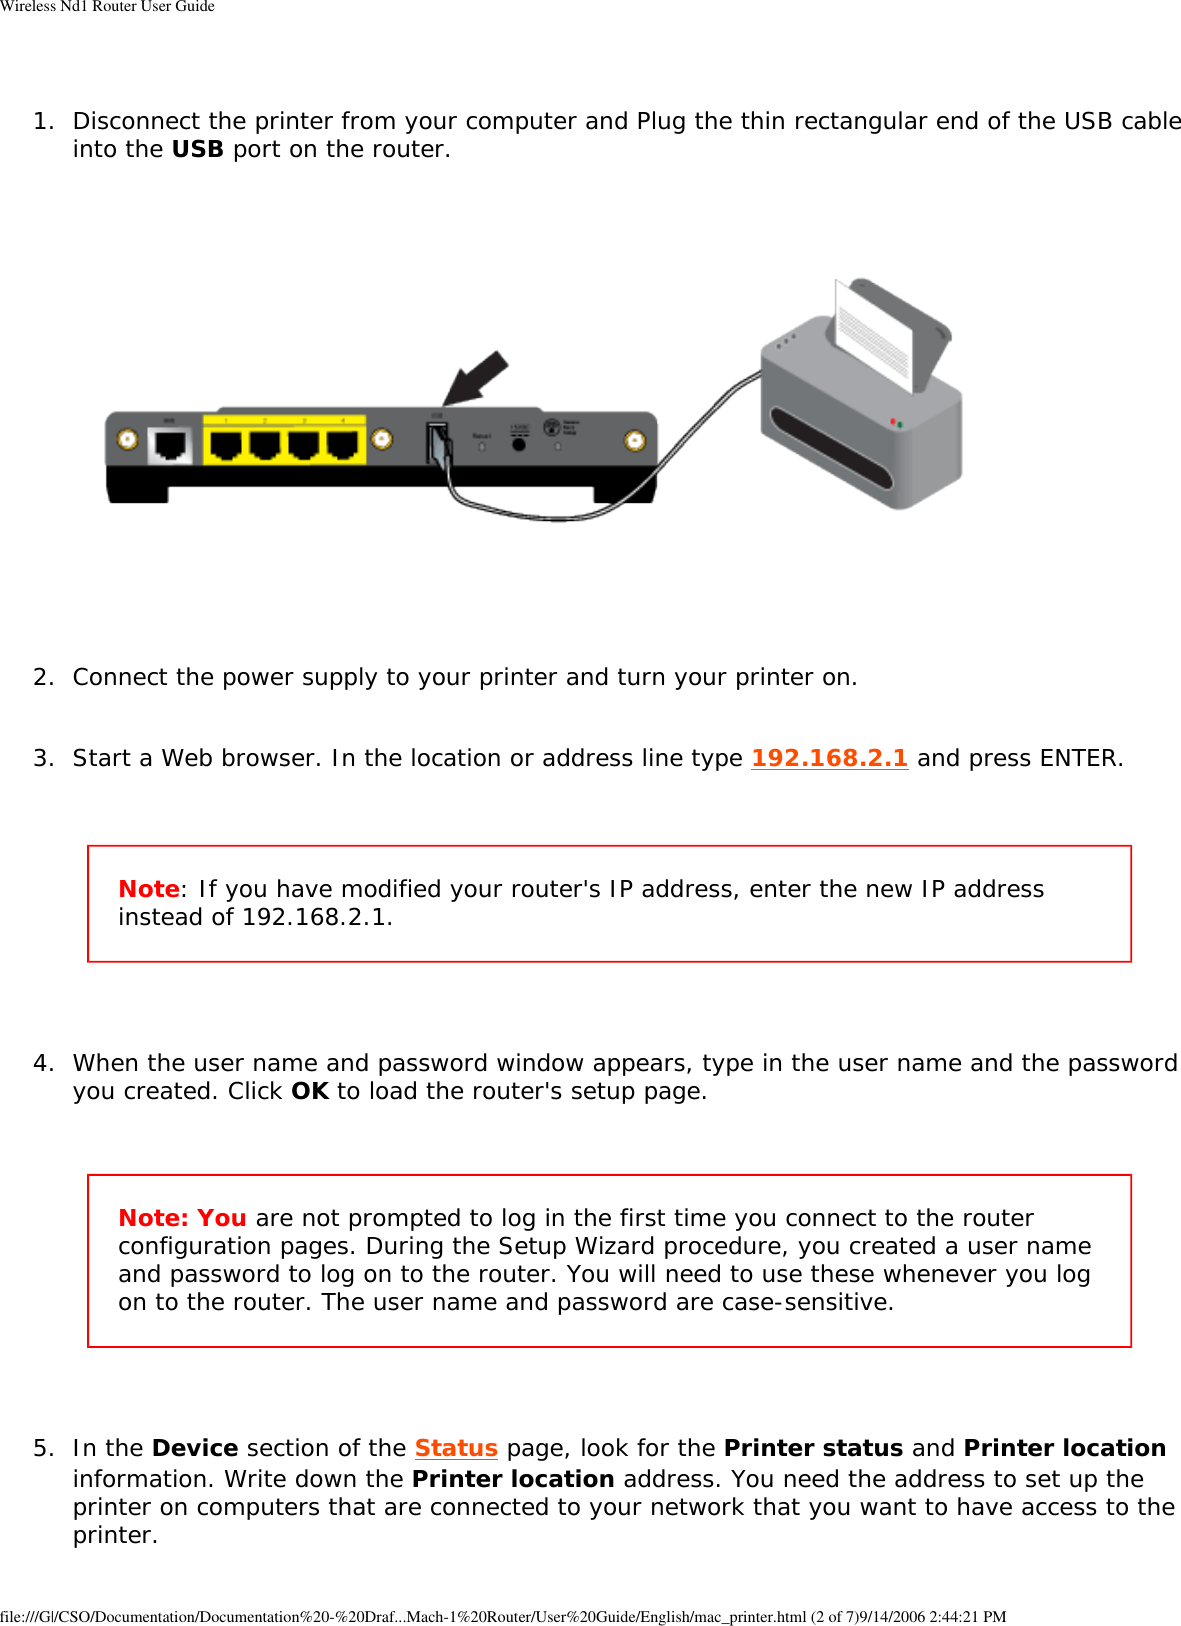 Page 49 of GemTek Technology R950630GN USRobotics Wireless Nd1 Router User Manual Wireless Nd1 Router User Guide